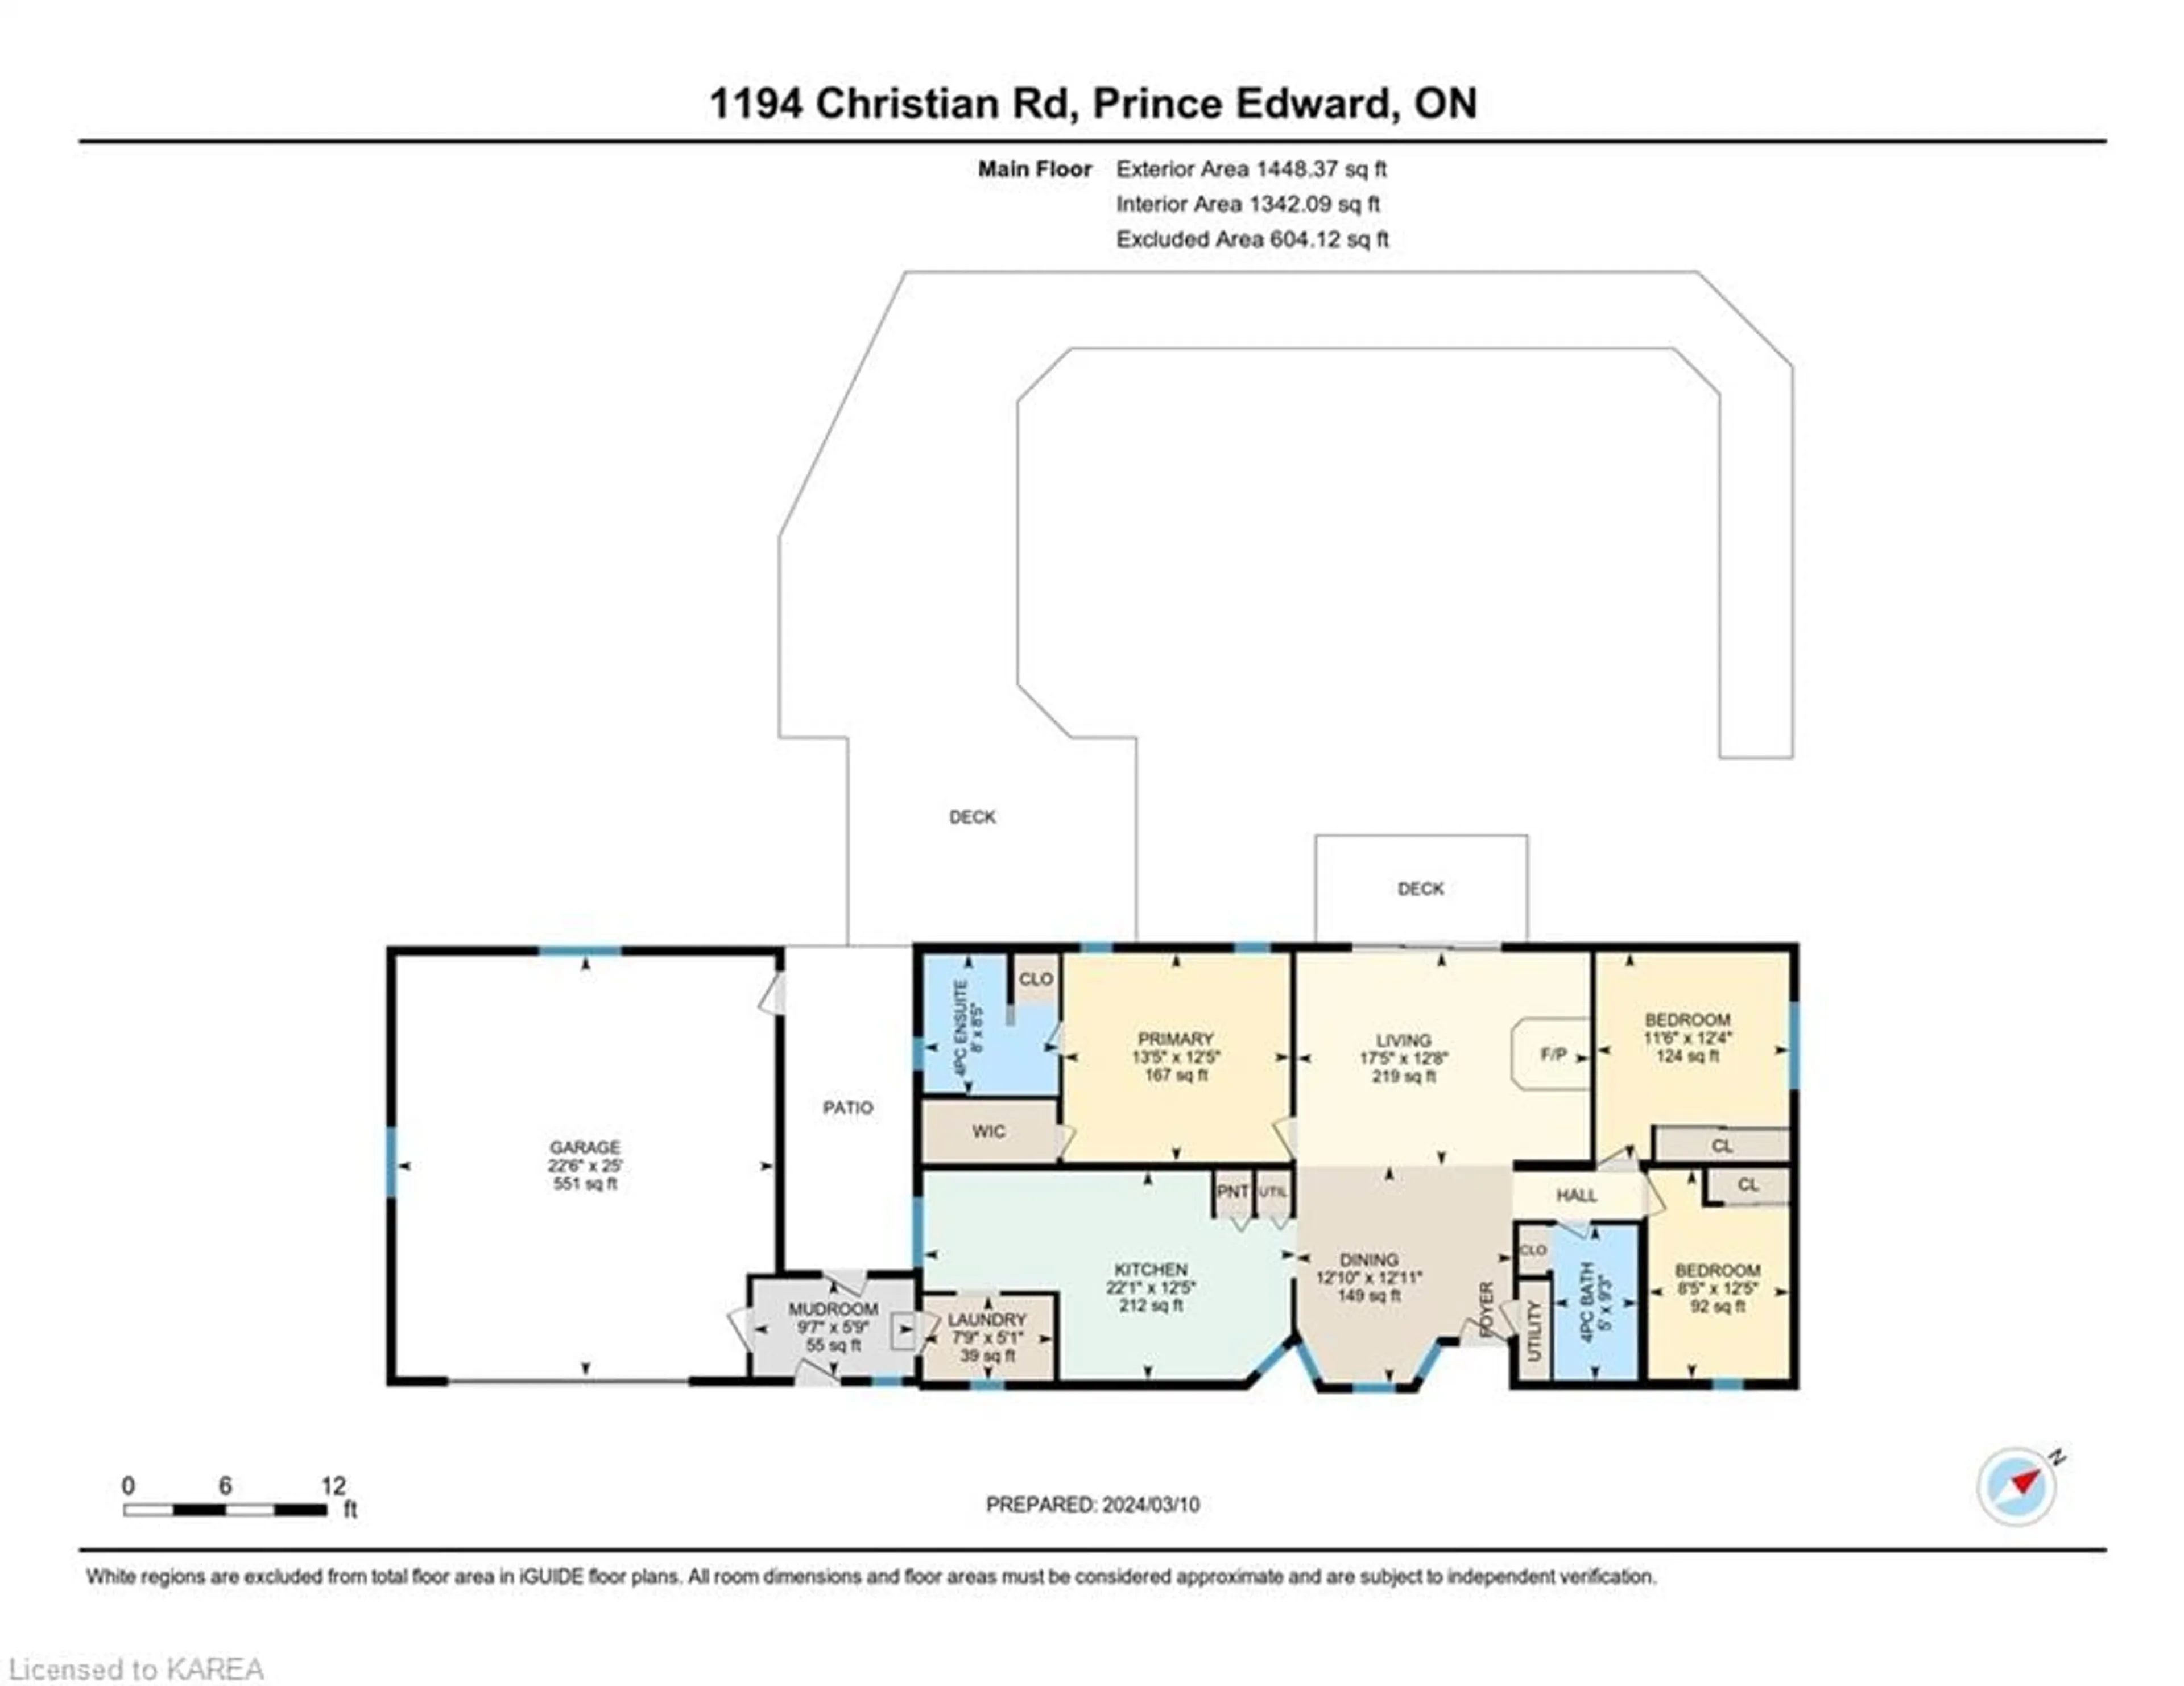 Floor plan for 1194 Christian Rd, Bloomfield Ontario K0K 1G0